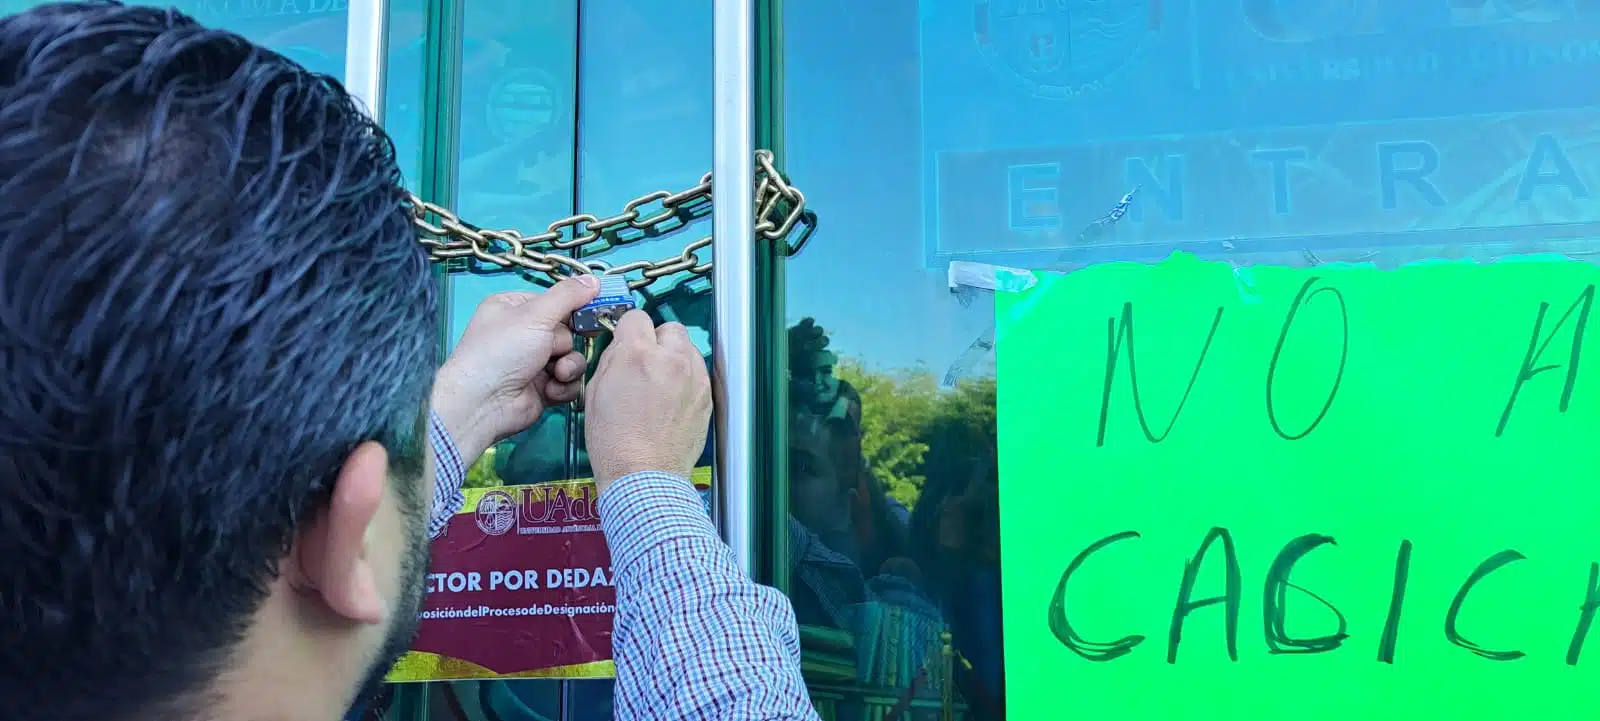 Las manos de una persona abriendo el candado de rectoría de la UAdeO en Culiacán